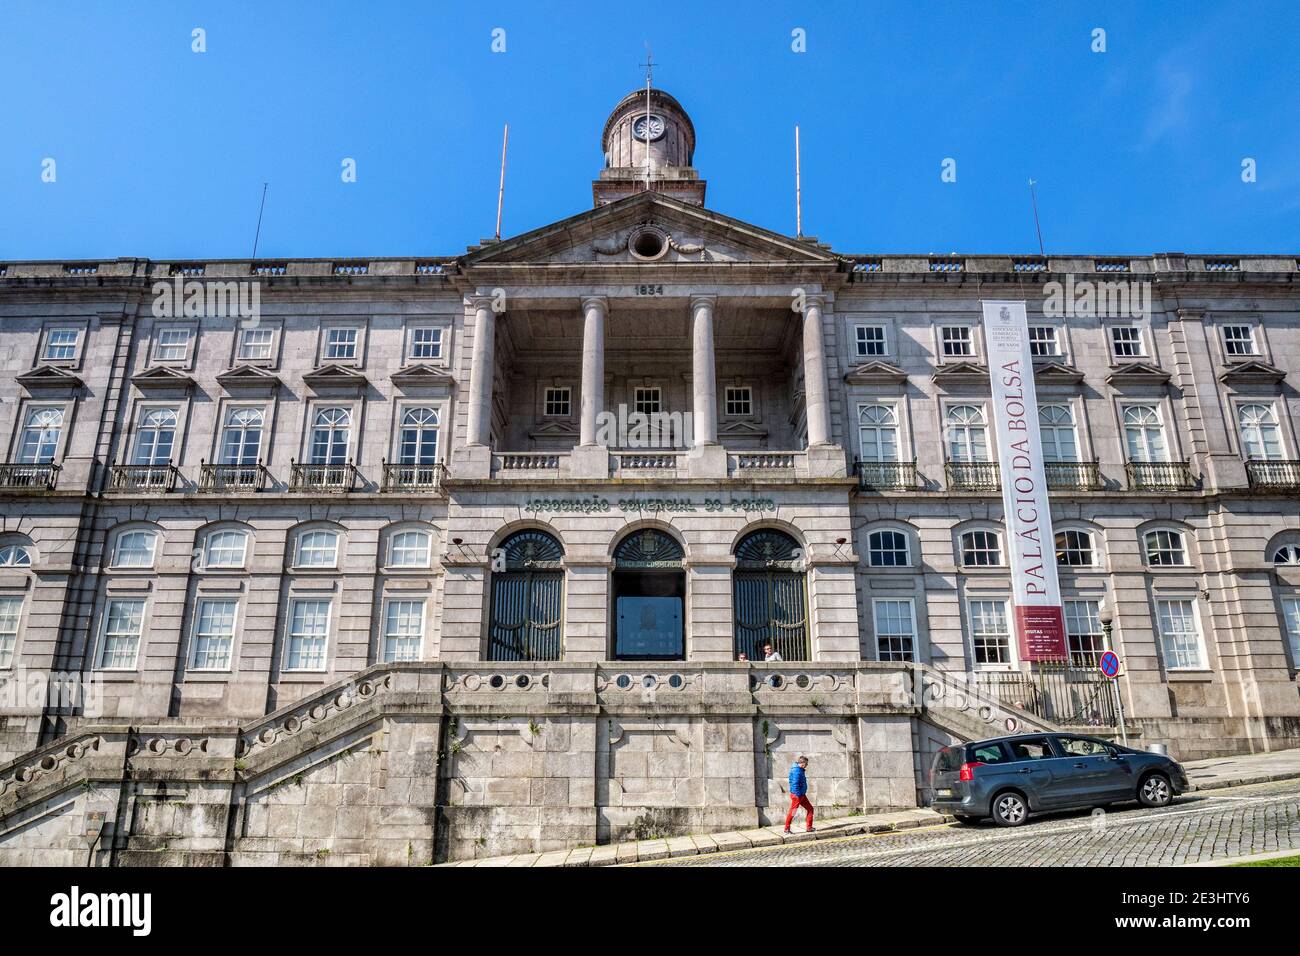 10 marzo 2020: Porto, Portogallo - il Palácio da Bolsa o Palazzo della Borsa, un edificio commerciale ornato del XIX secolo a Porto. Foto Stock